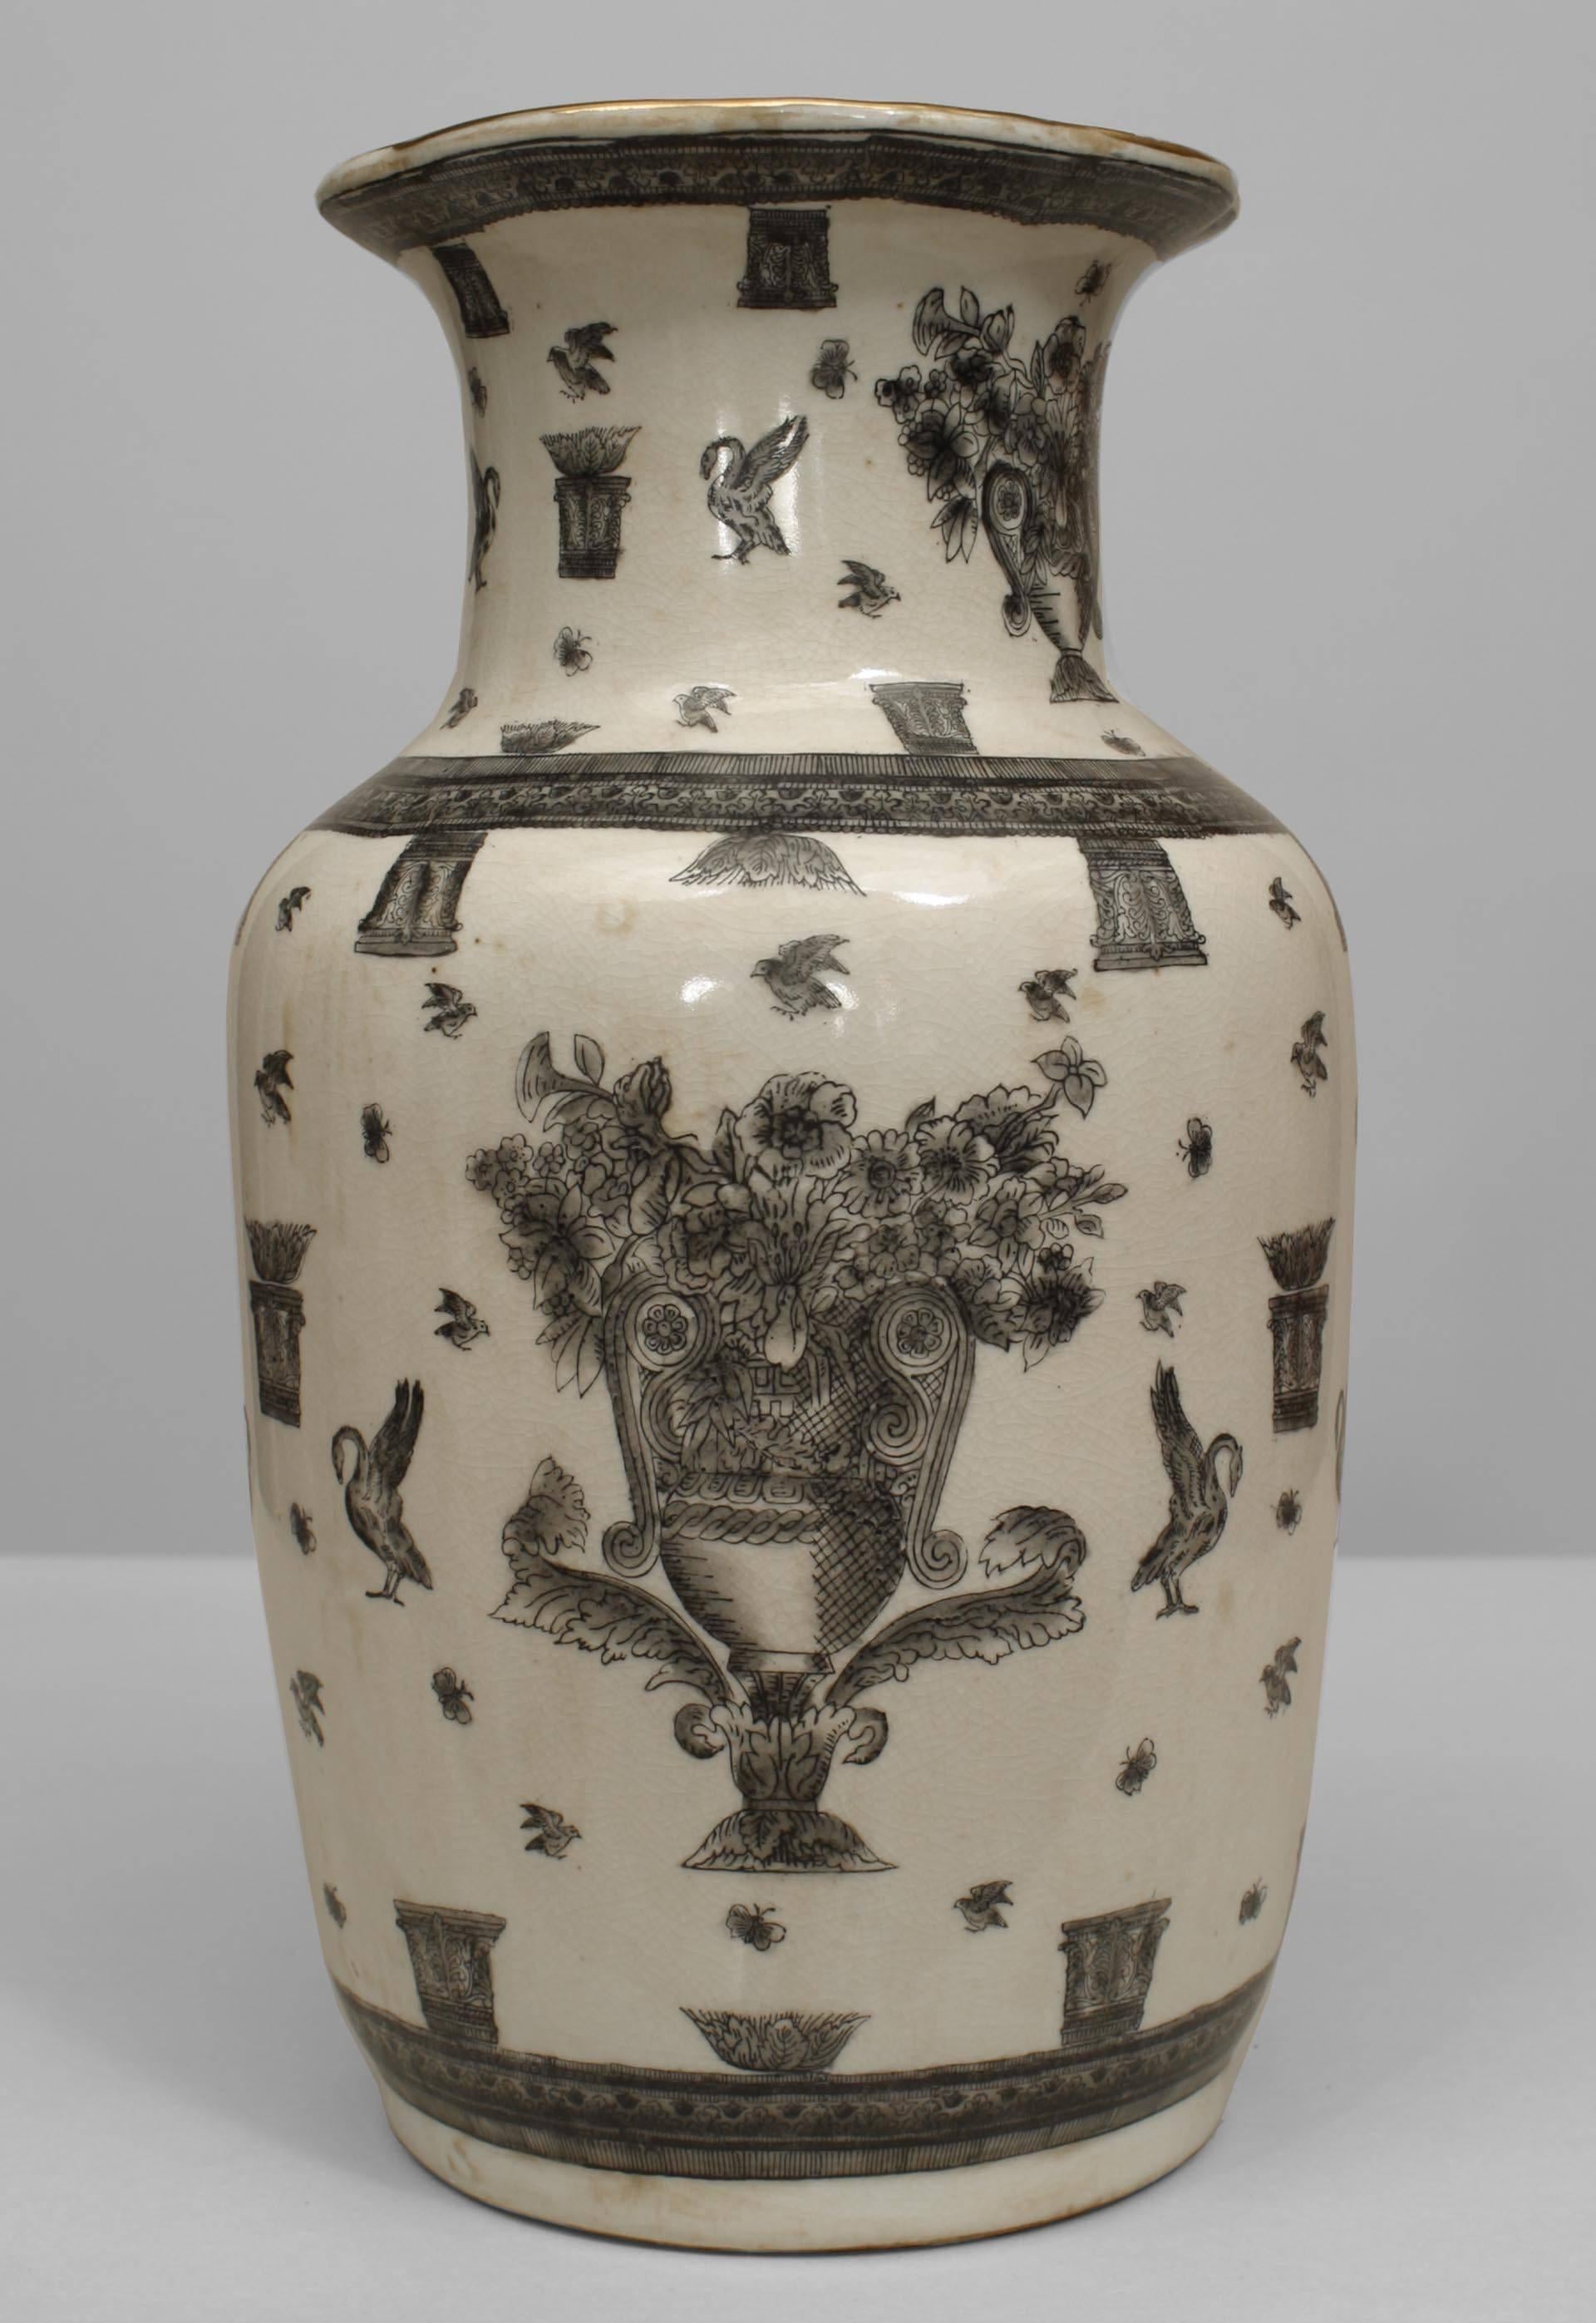 Ein Paar weiß und schwarz verzierte Vasen im asiatisch-chinesischen Stil (19. Jh.) mit großen Urnen, gefüllt mit Blumen, Vögeln und Schmetterlingen. RePairs (PREIS PRO PAAR)
